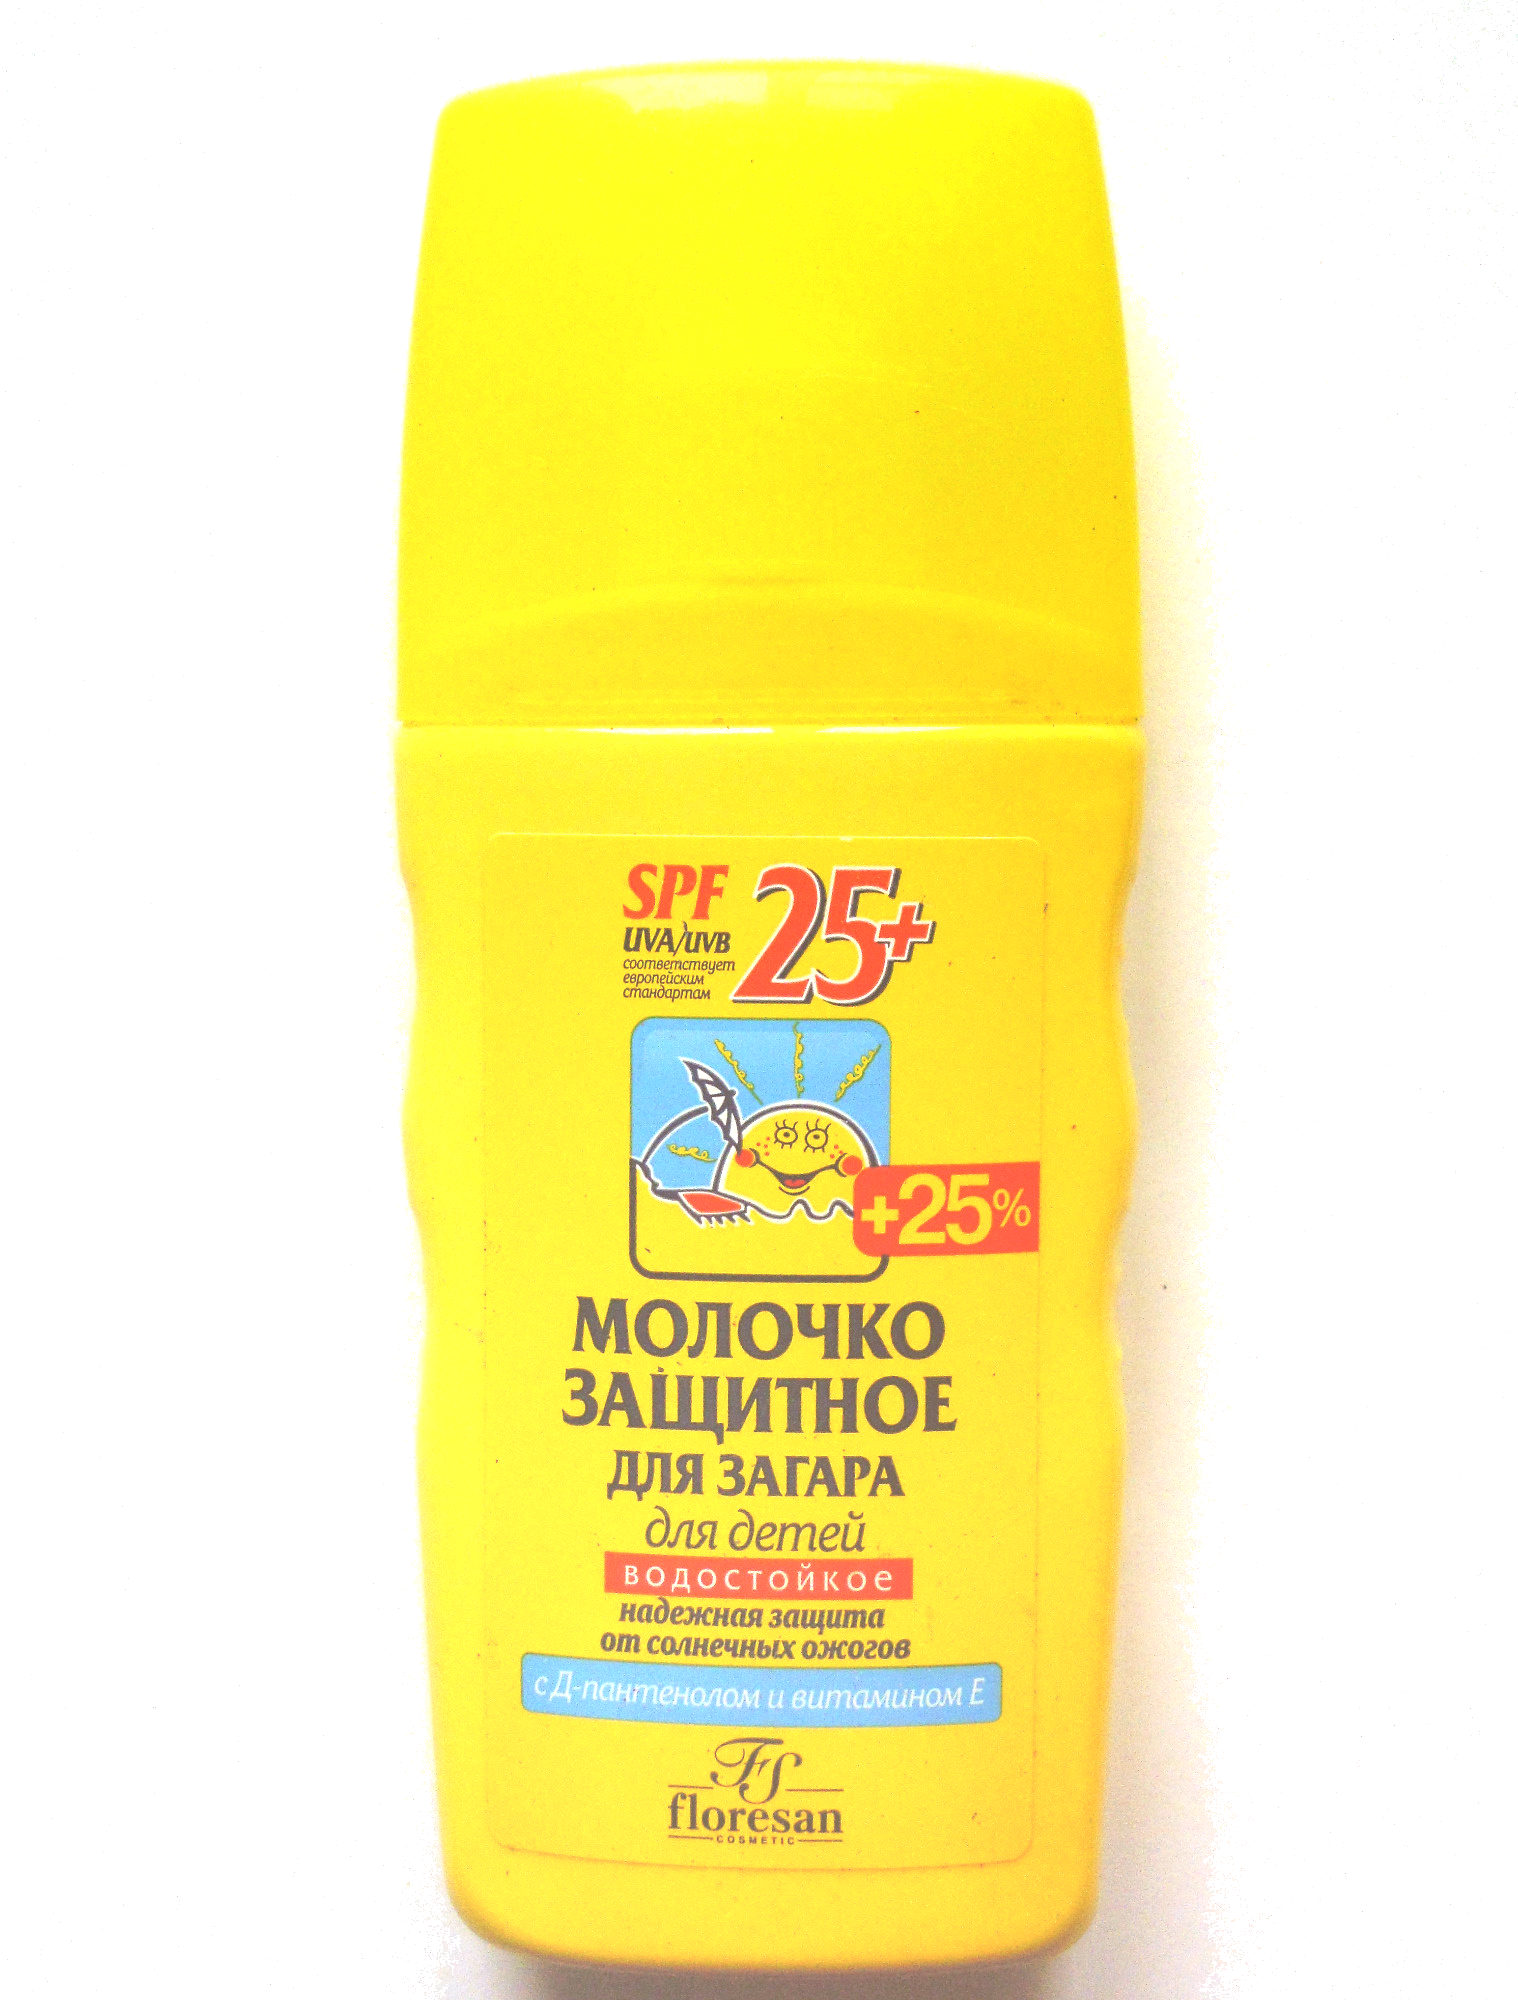 Молочко защитное для загара для детей - Produkt - ru